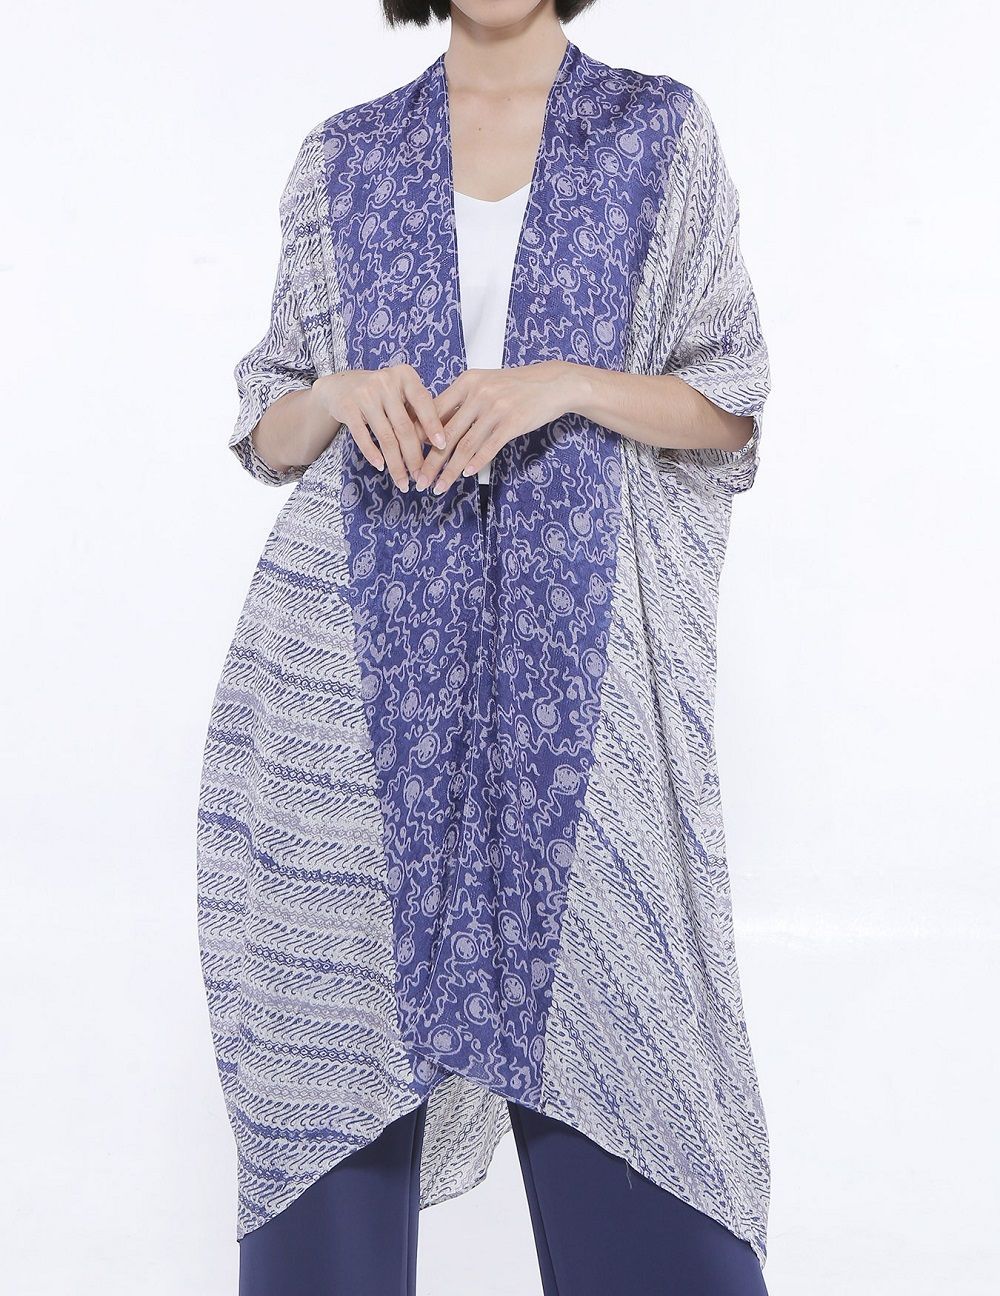 9 Model  Baju  Batik  Modern Wanita Terbaru 2019 Yang  Kece